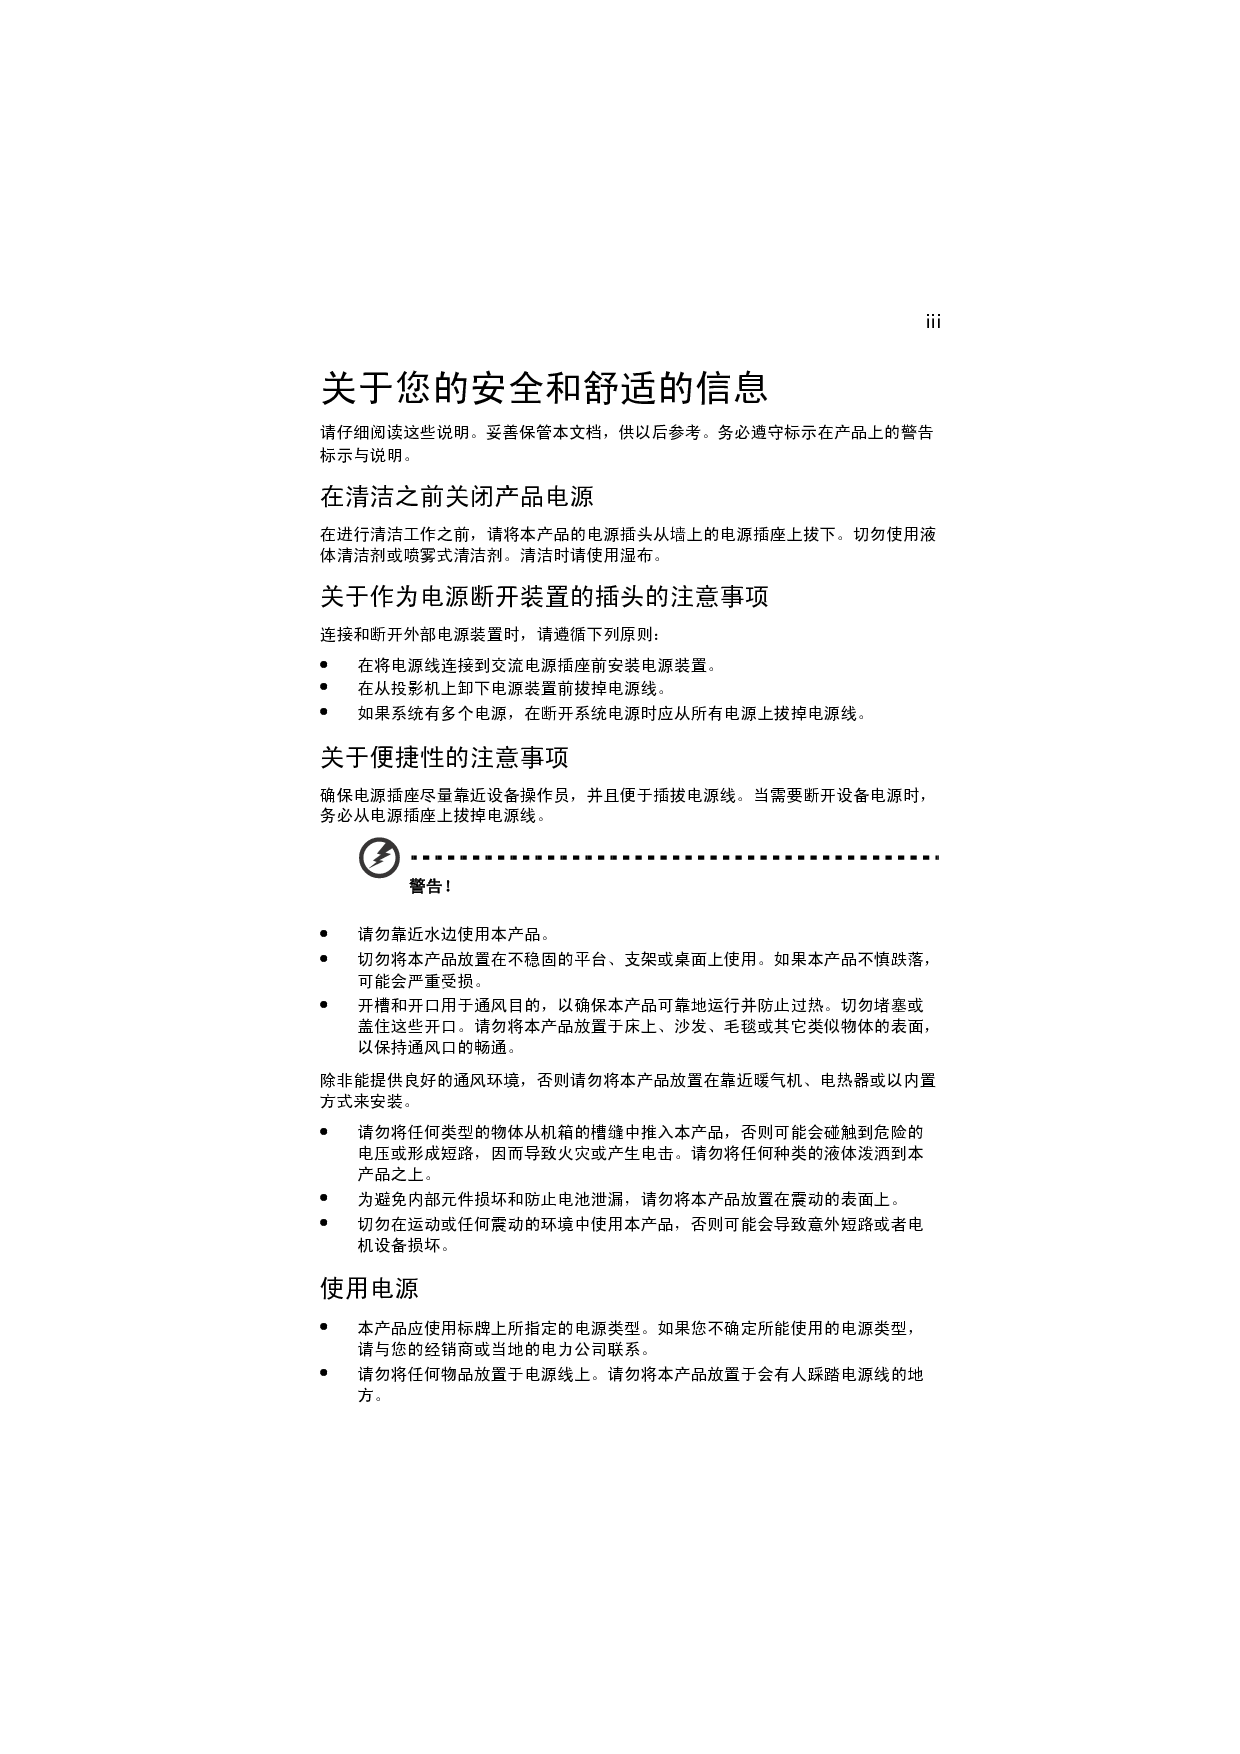 宏碁 Acer F150, P7500, PF-801 用户手册 第2页